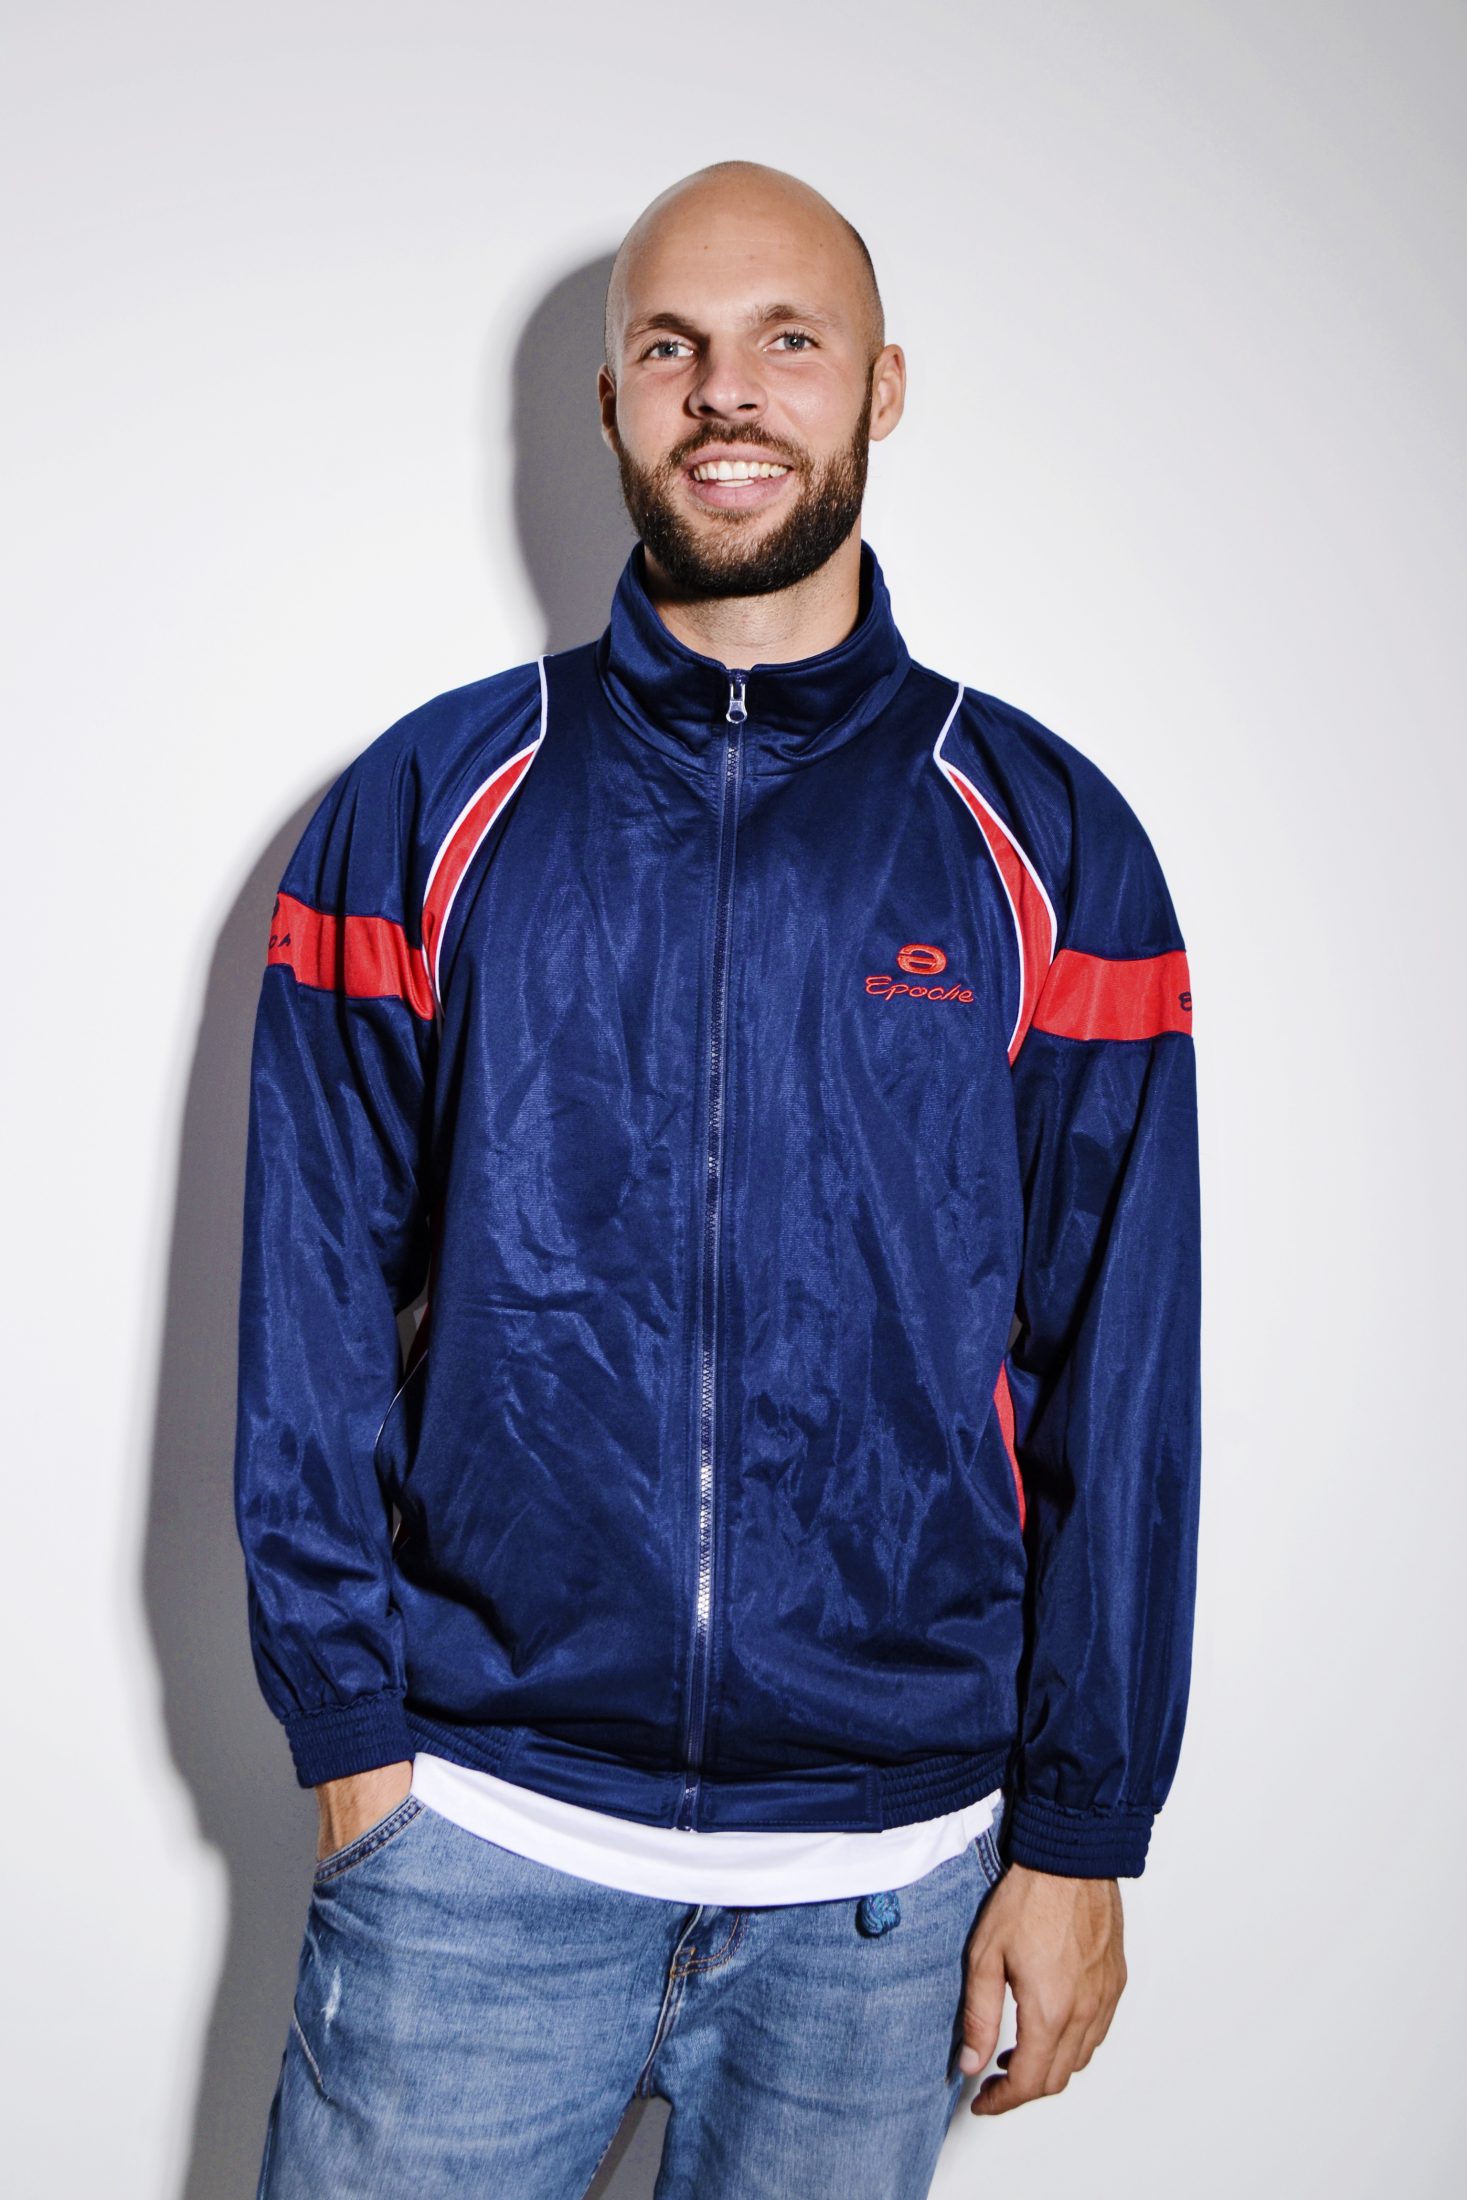 Retro vintage track jacket blue | HOT MILK vintage clothing online store